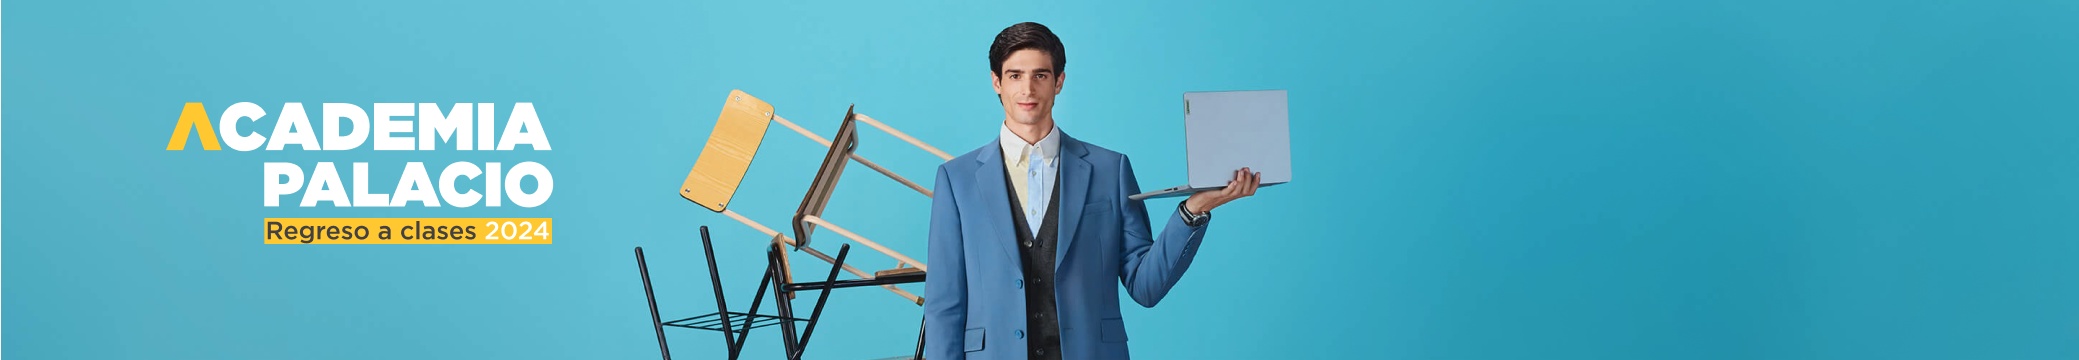 imagen de hombre con traje azul y laptop gris en la mano, hasta 20 % de descuento y 6 msi, BTS 2024